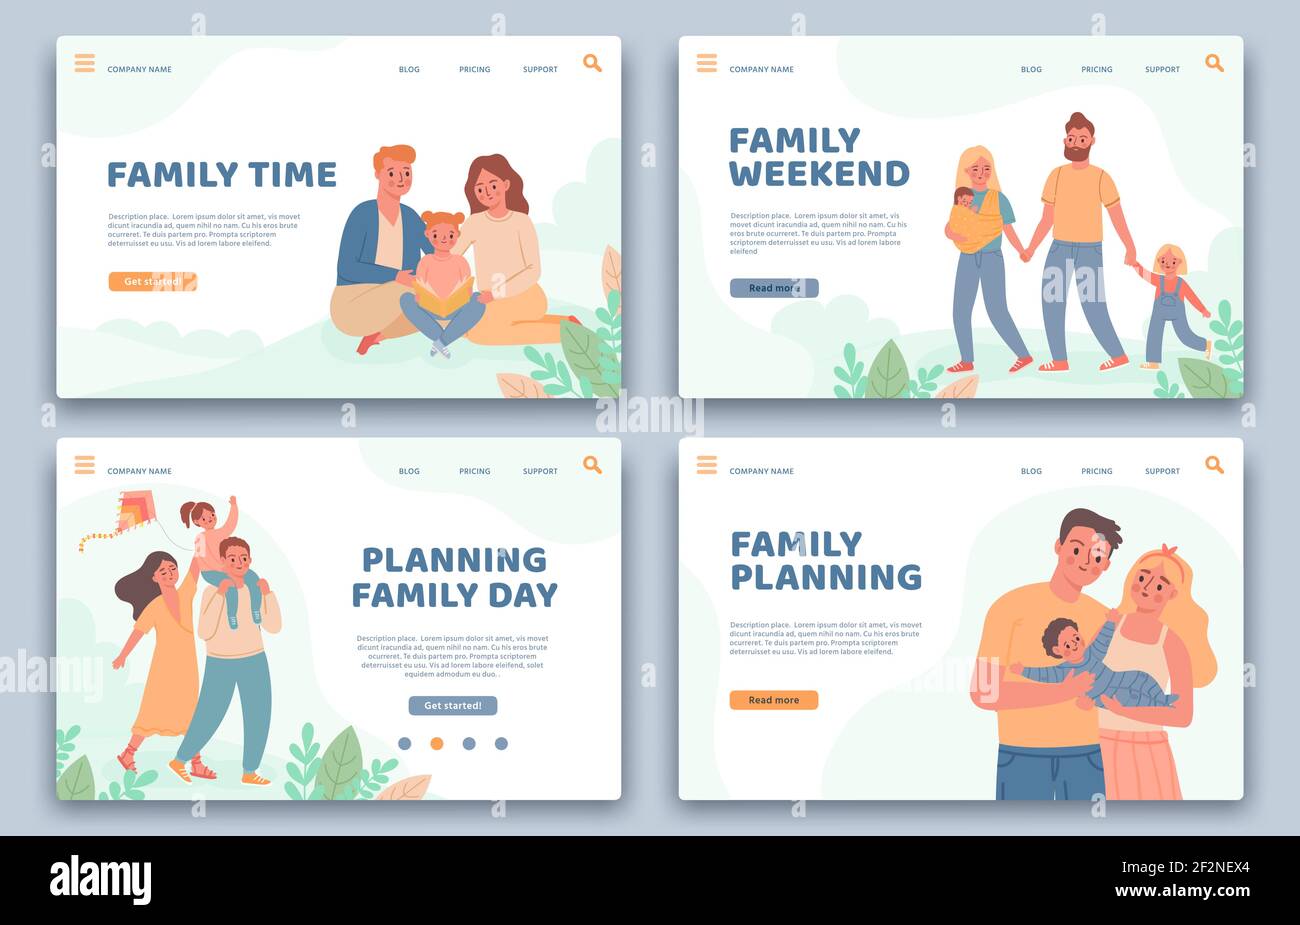 Glückliche Familien Landing Pages. Aktive Eltern und Kinder im Urlaub. Website für Familienplanung, gesundes Leben und Freizeit Vektor-Set Stock Vektor